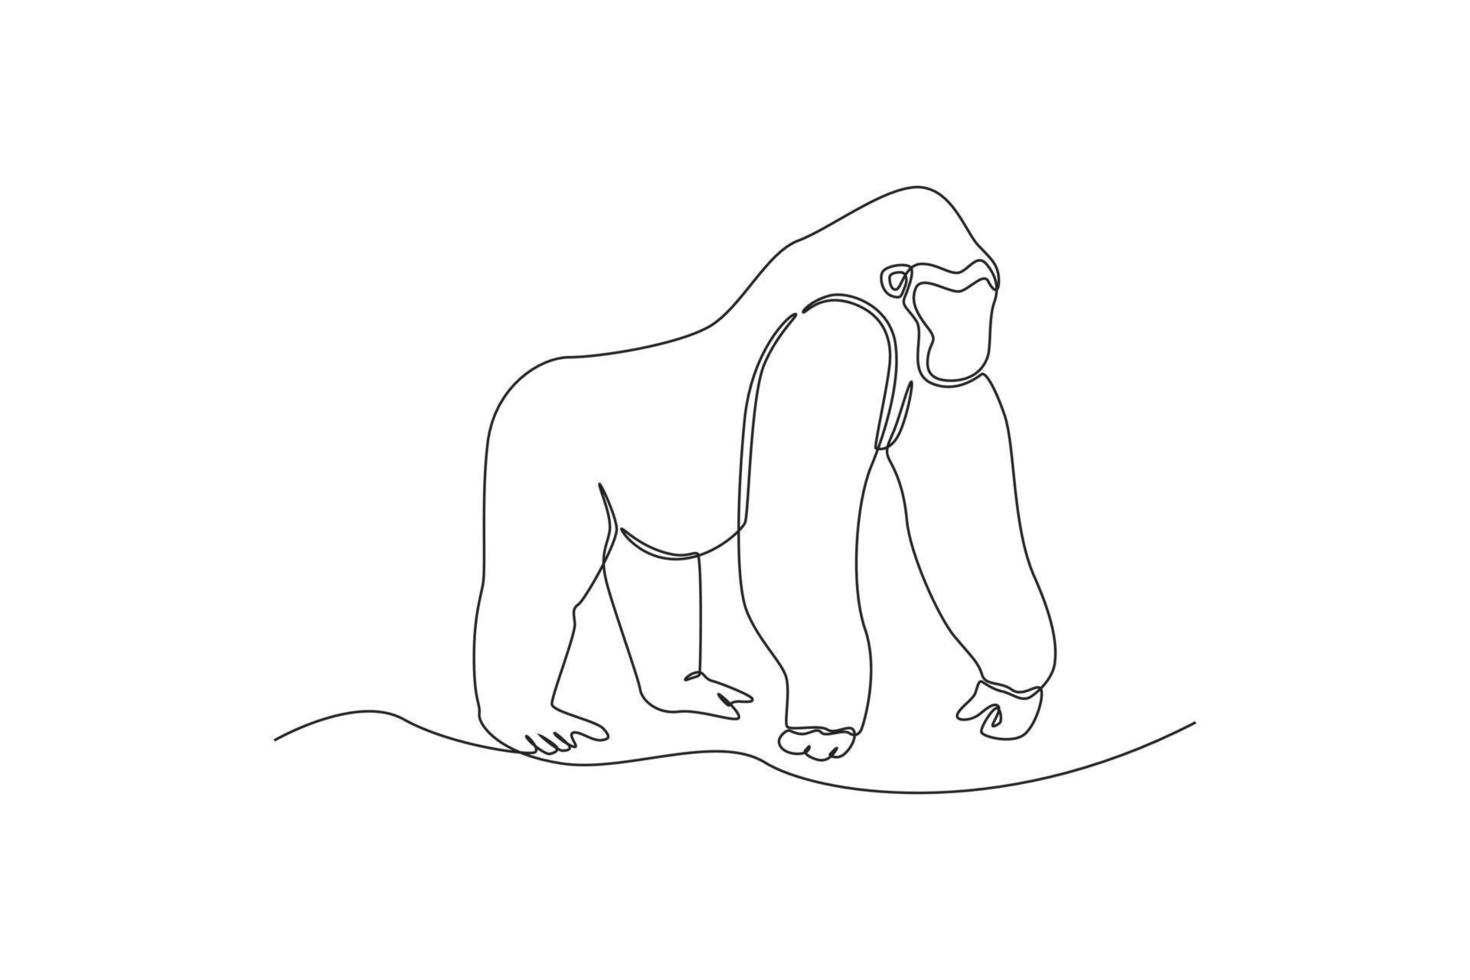 un dibujo de línea continua de un gorila. concepto de animales ilustración gráfica vectorial de diseño de dibujo de una sola línea. vector